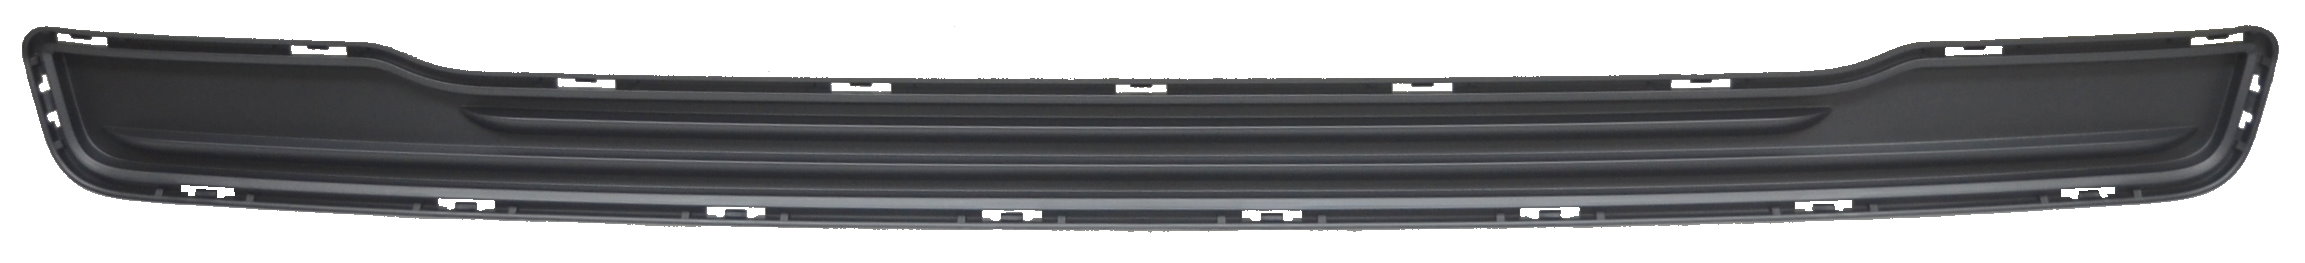 Aftermarket GRILLES for RAM - 1500, 1500,13-18,Front bumper grille